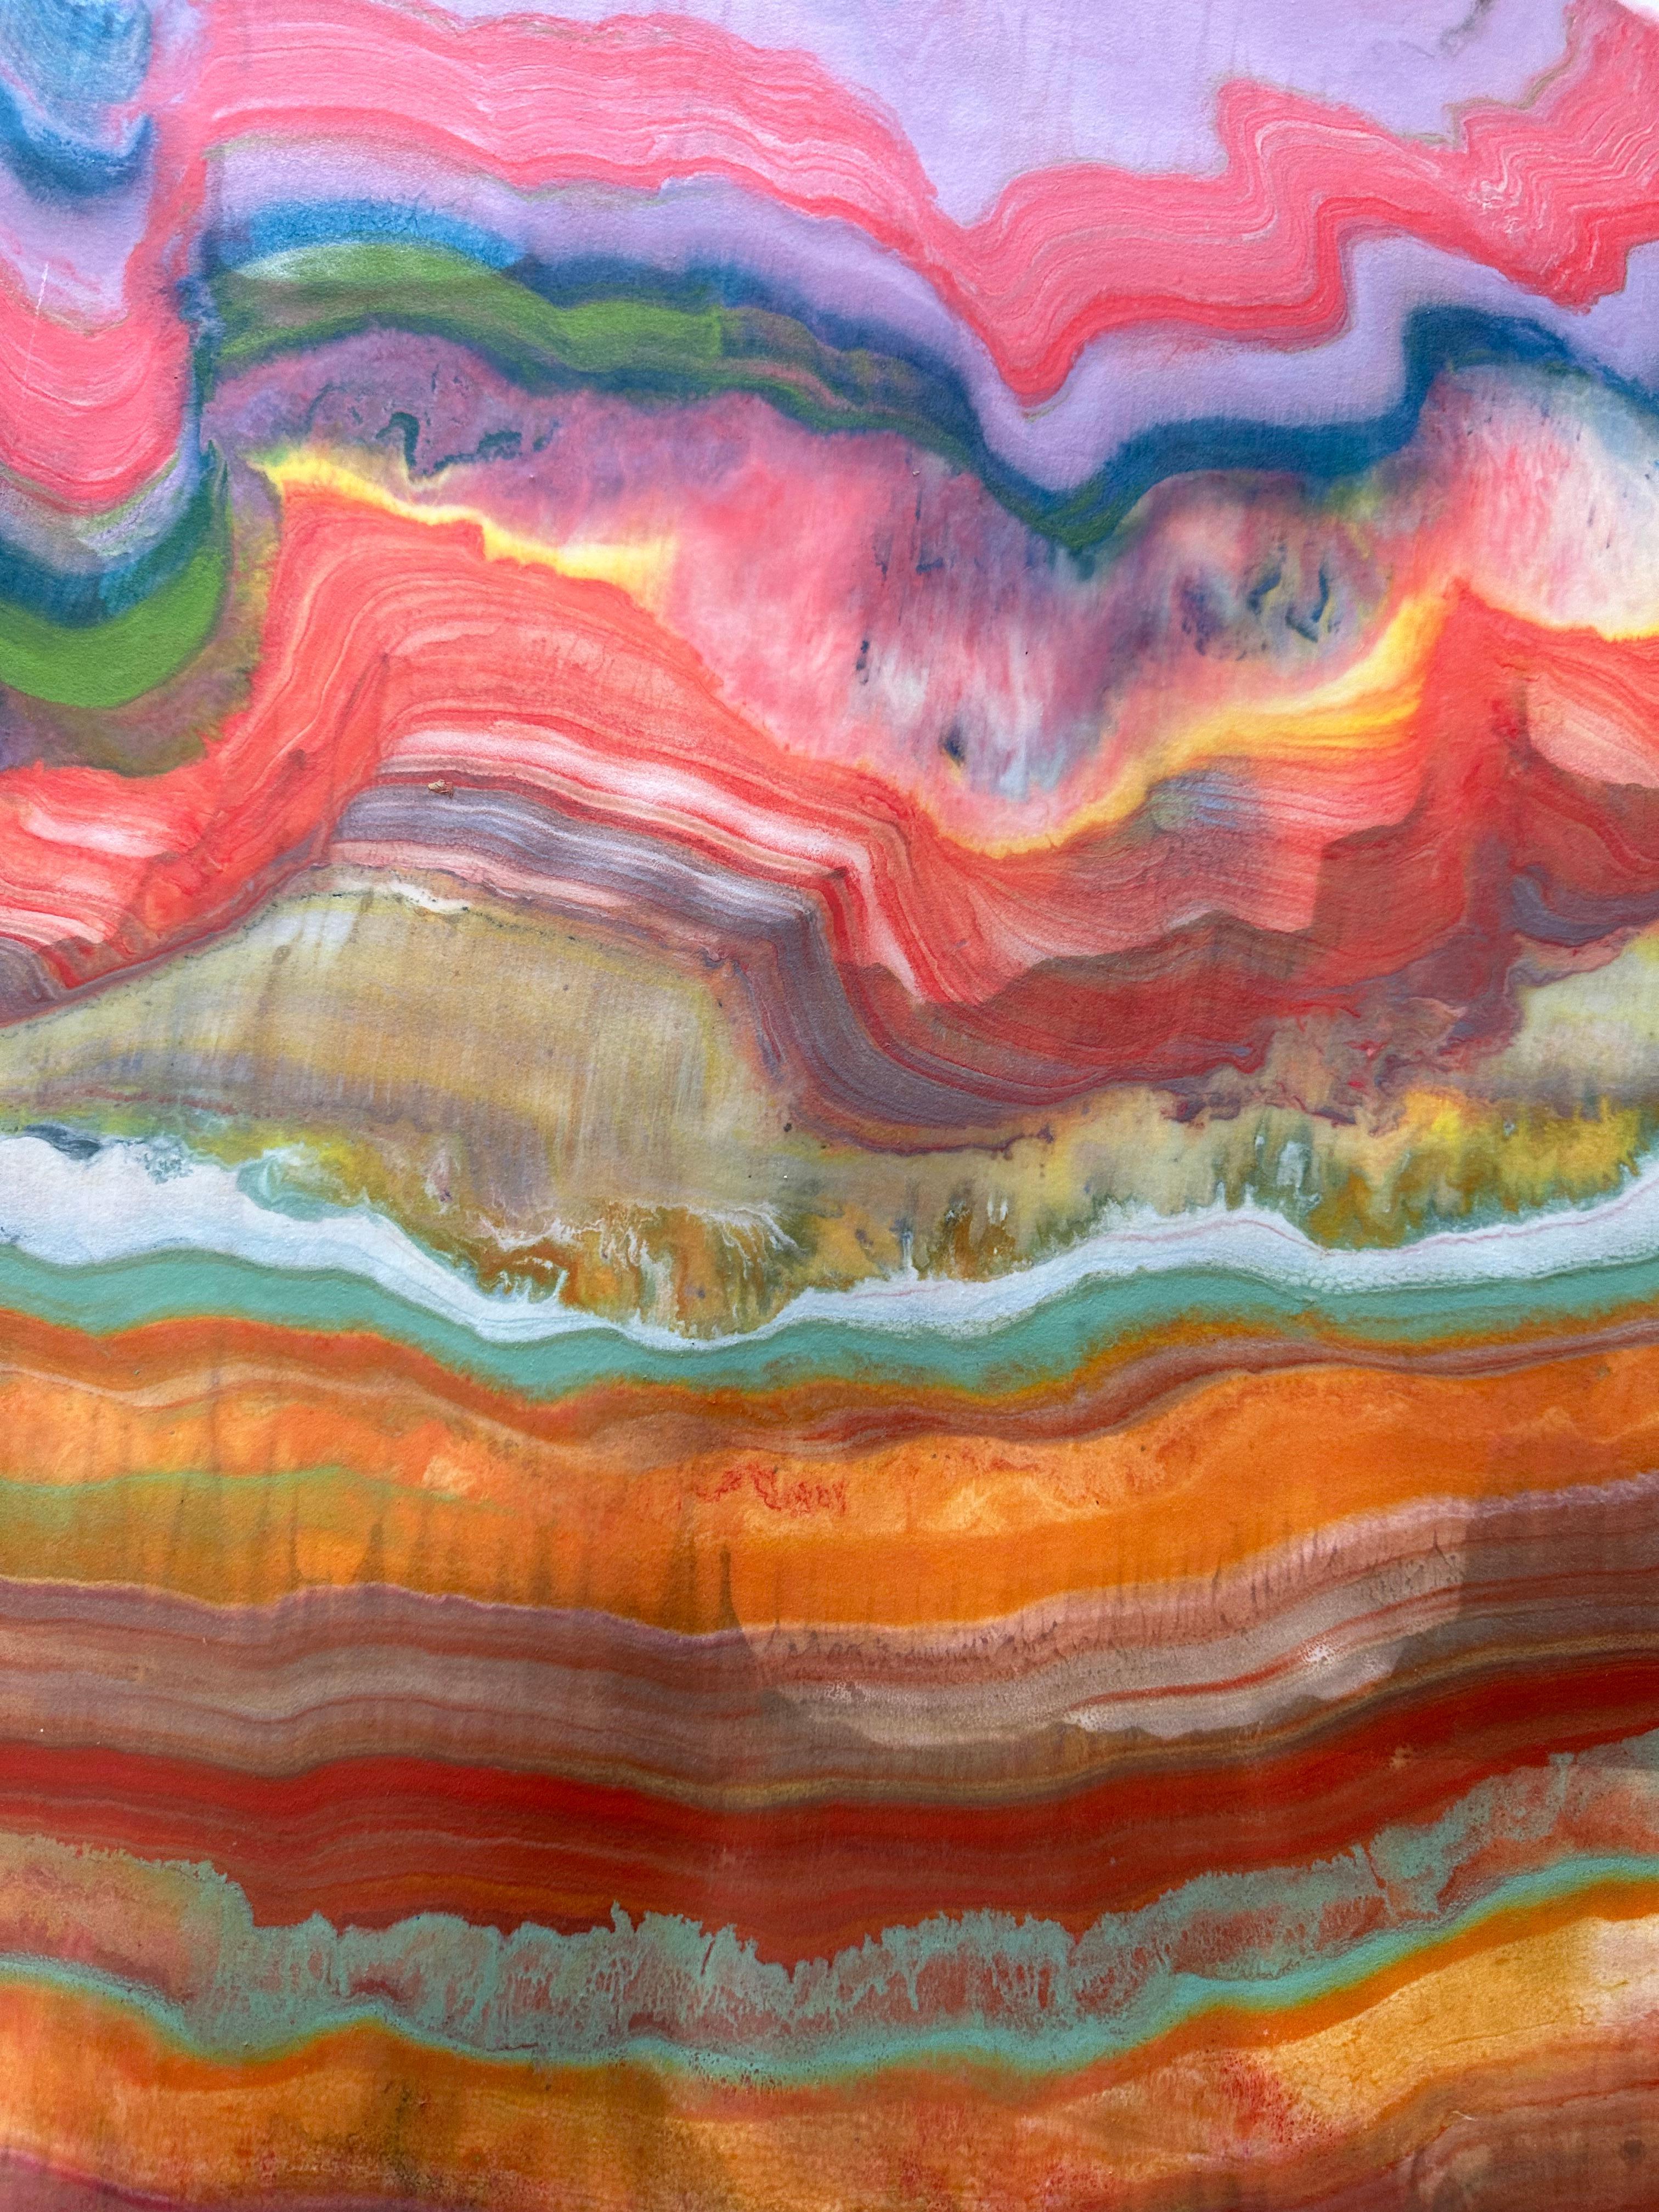 Talking to Rocks 31 de Laura Moriarty est un monotype encaustique multicolore sur papier kozo. Des couches de cire d'abeille pigmentée sur du papier léger créent une composition ondulante suggérant des couches de la croûte terrestre et des